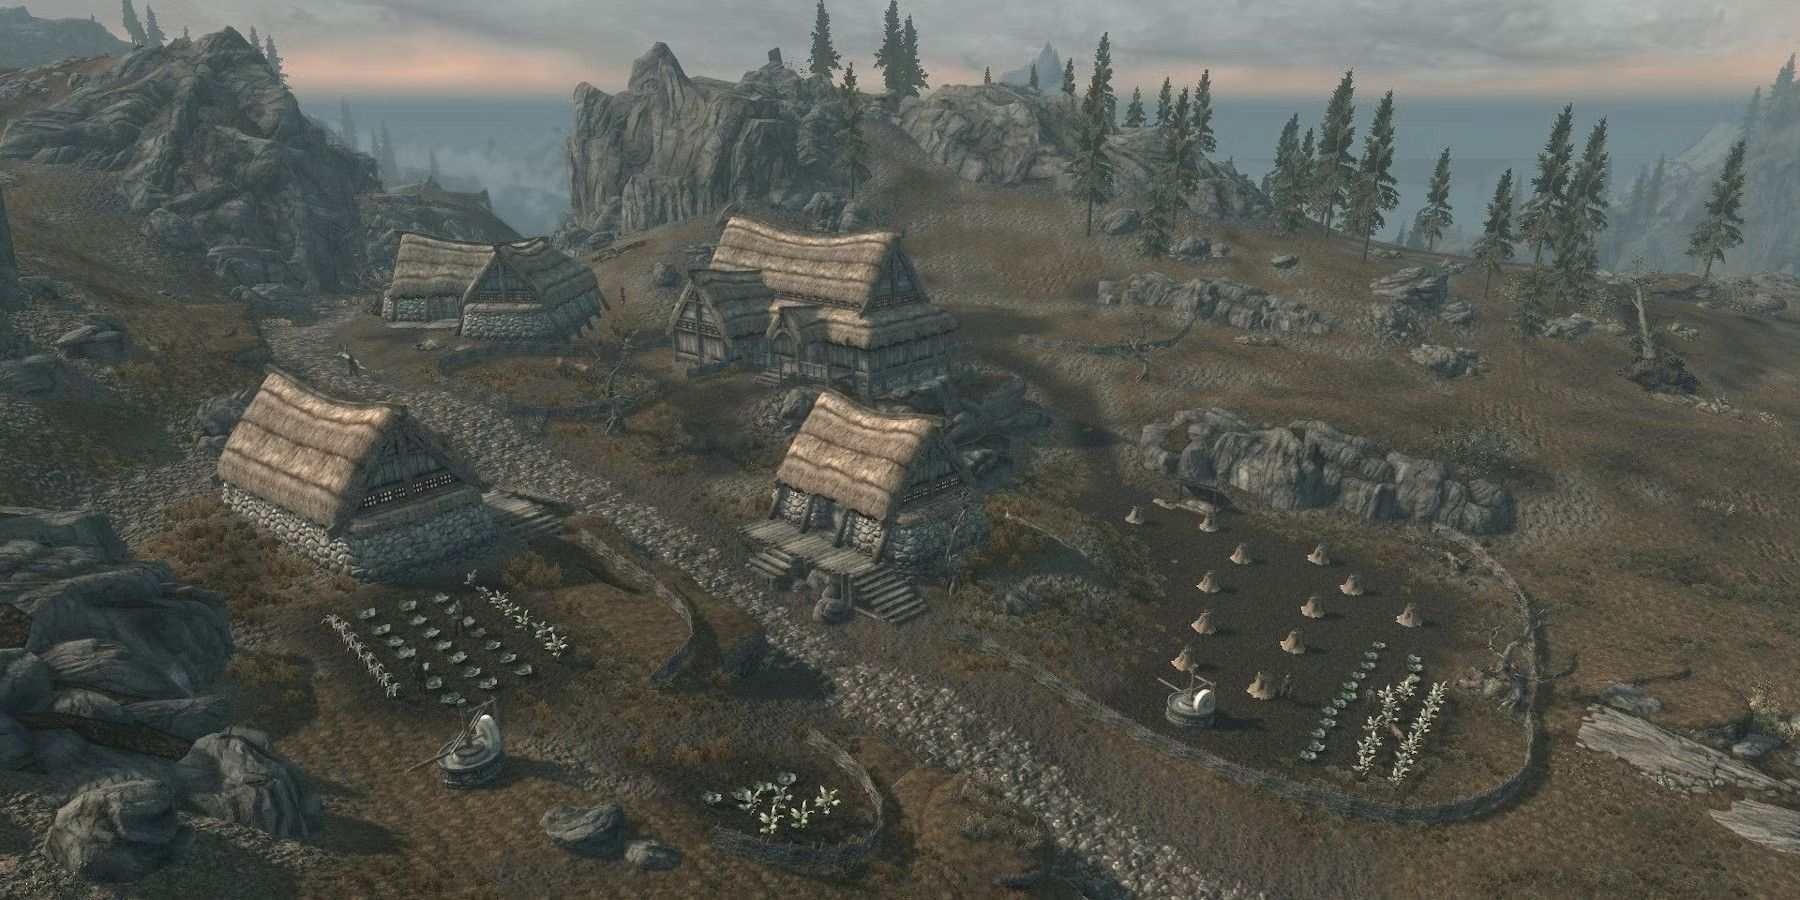 Game maps and Skyrim